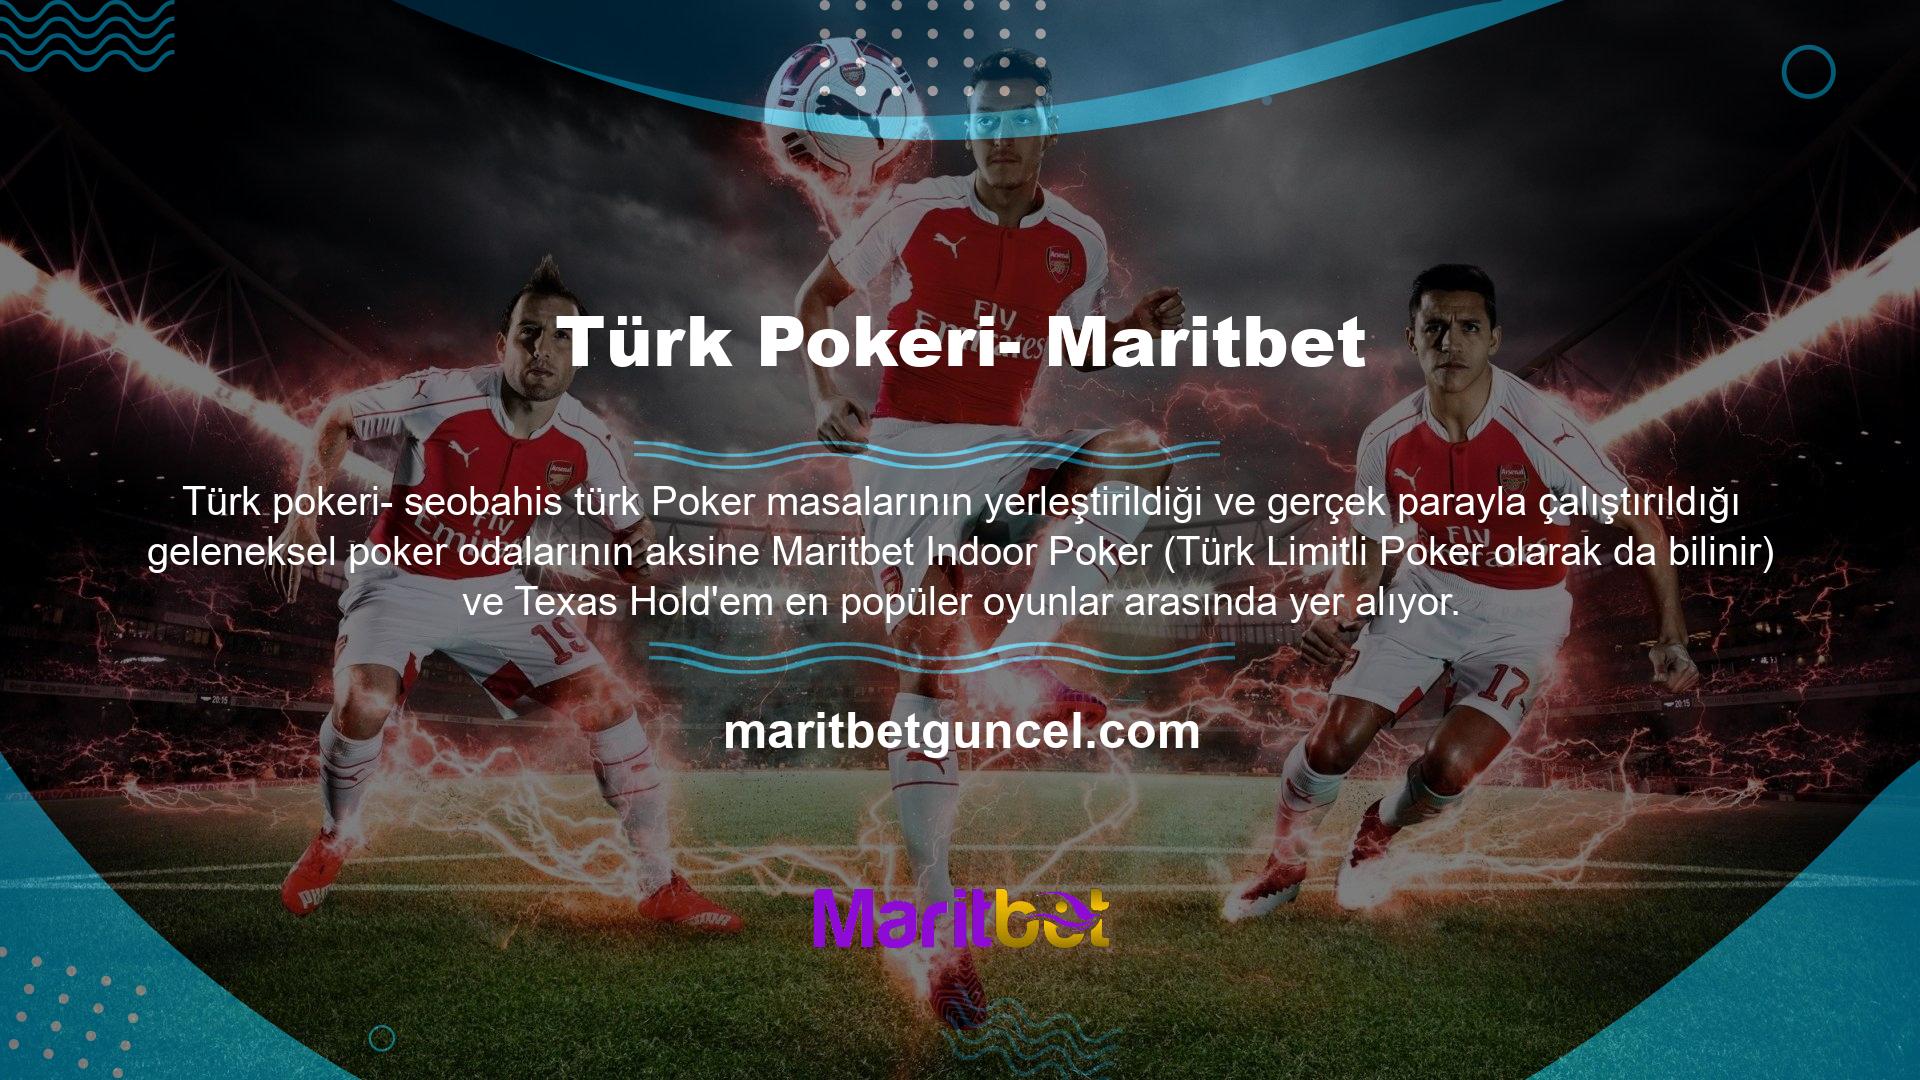 Maritbet poker sitesi oynanabilirlik açısından diğer Türk poker sitelerine göre üstündür